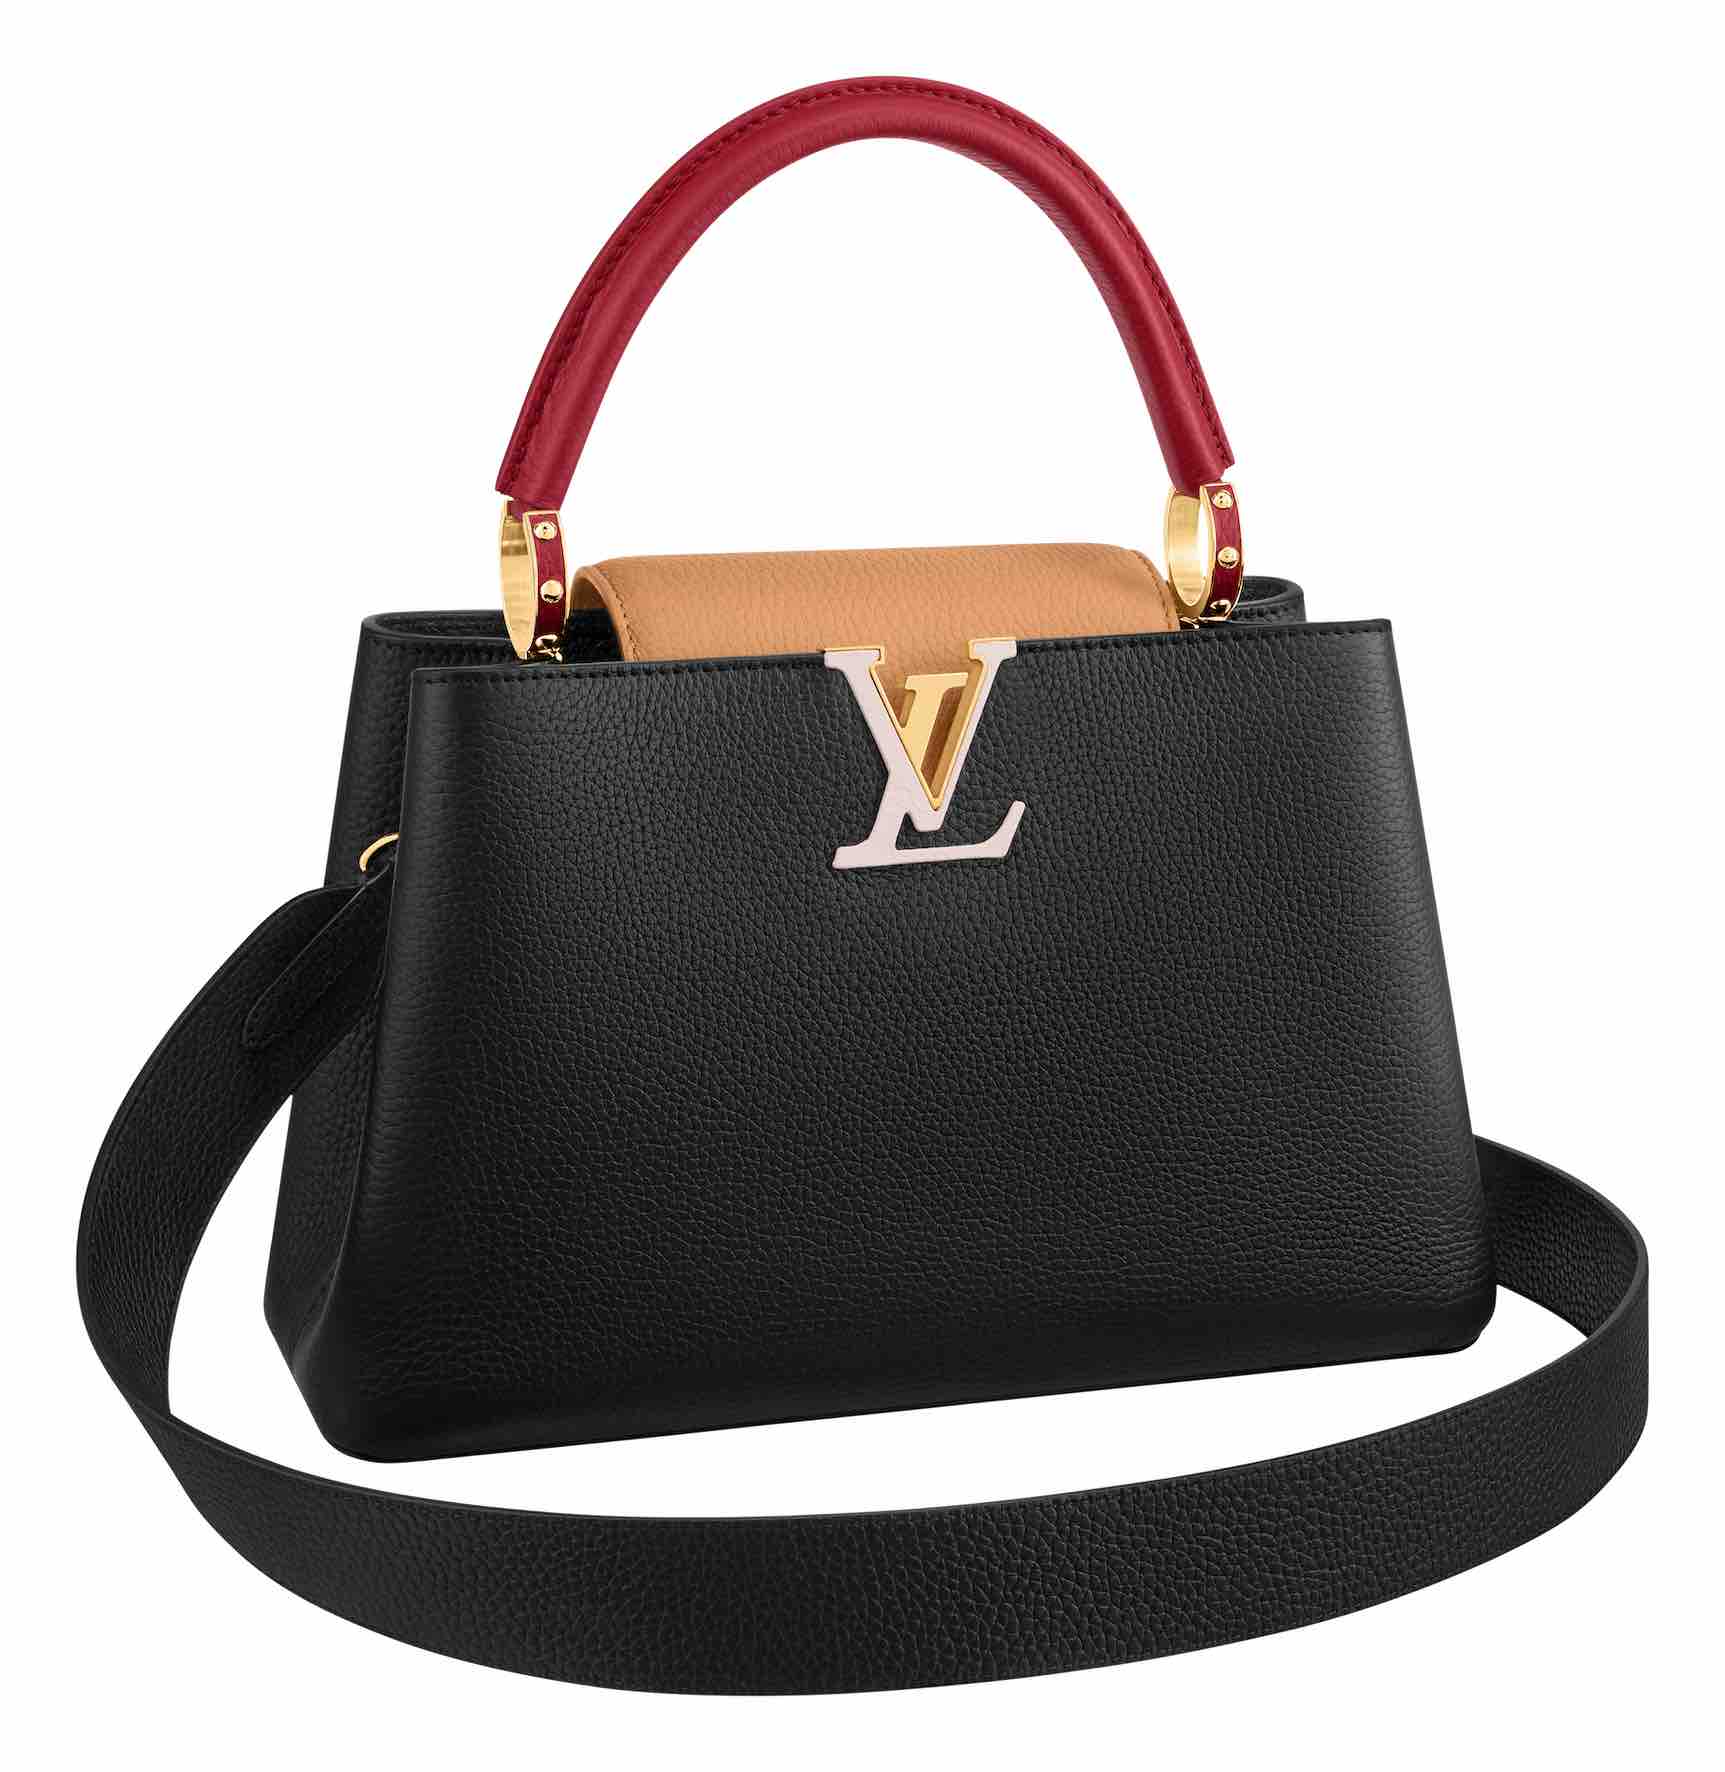 Le sac Capucines de Louis Vuitton - Stiletto